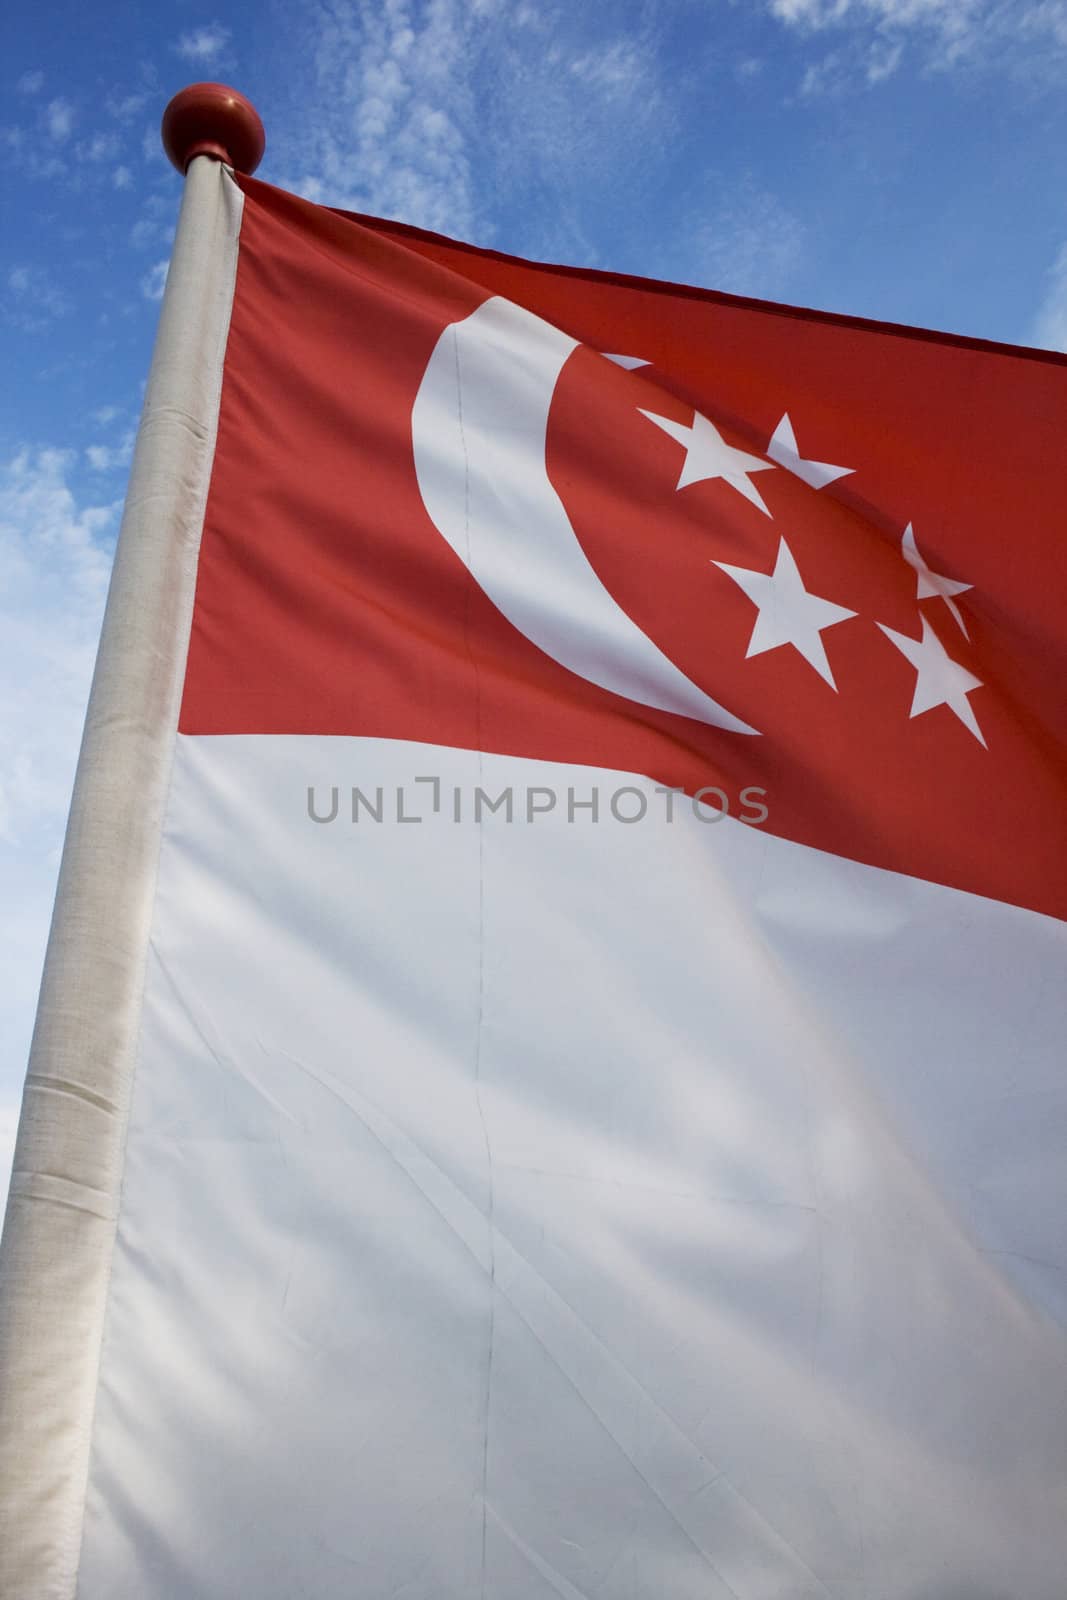 Singapore flag by BengLim